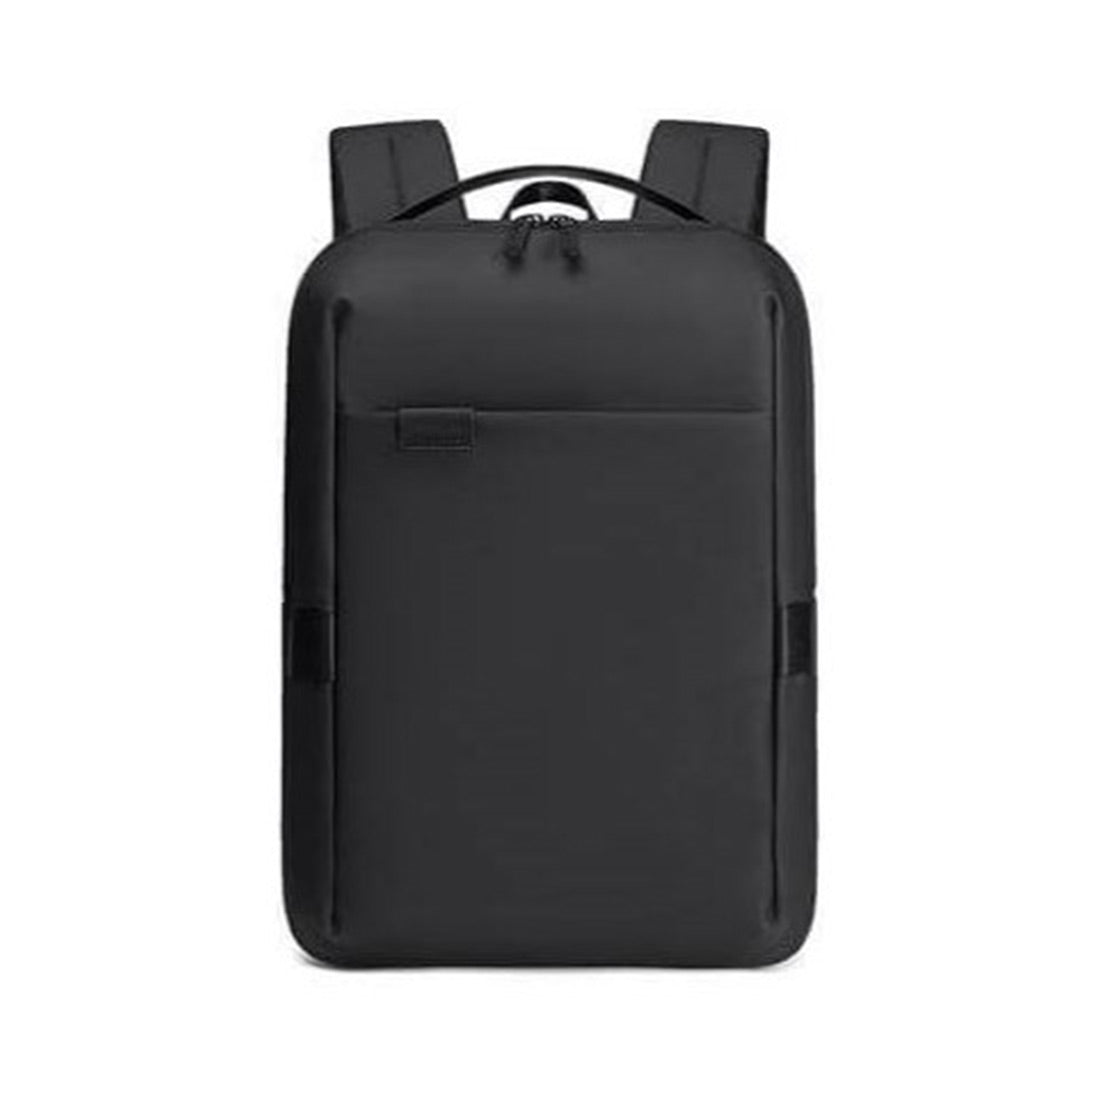 SKROSS Travel Urban 15.6 Laptop Backpack